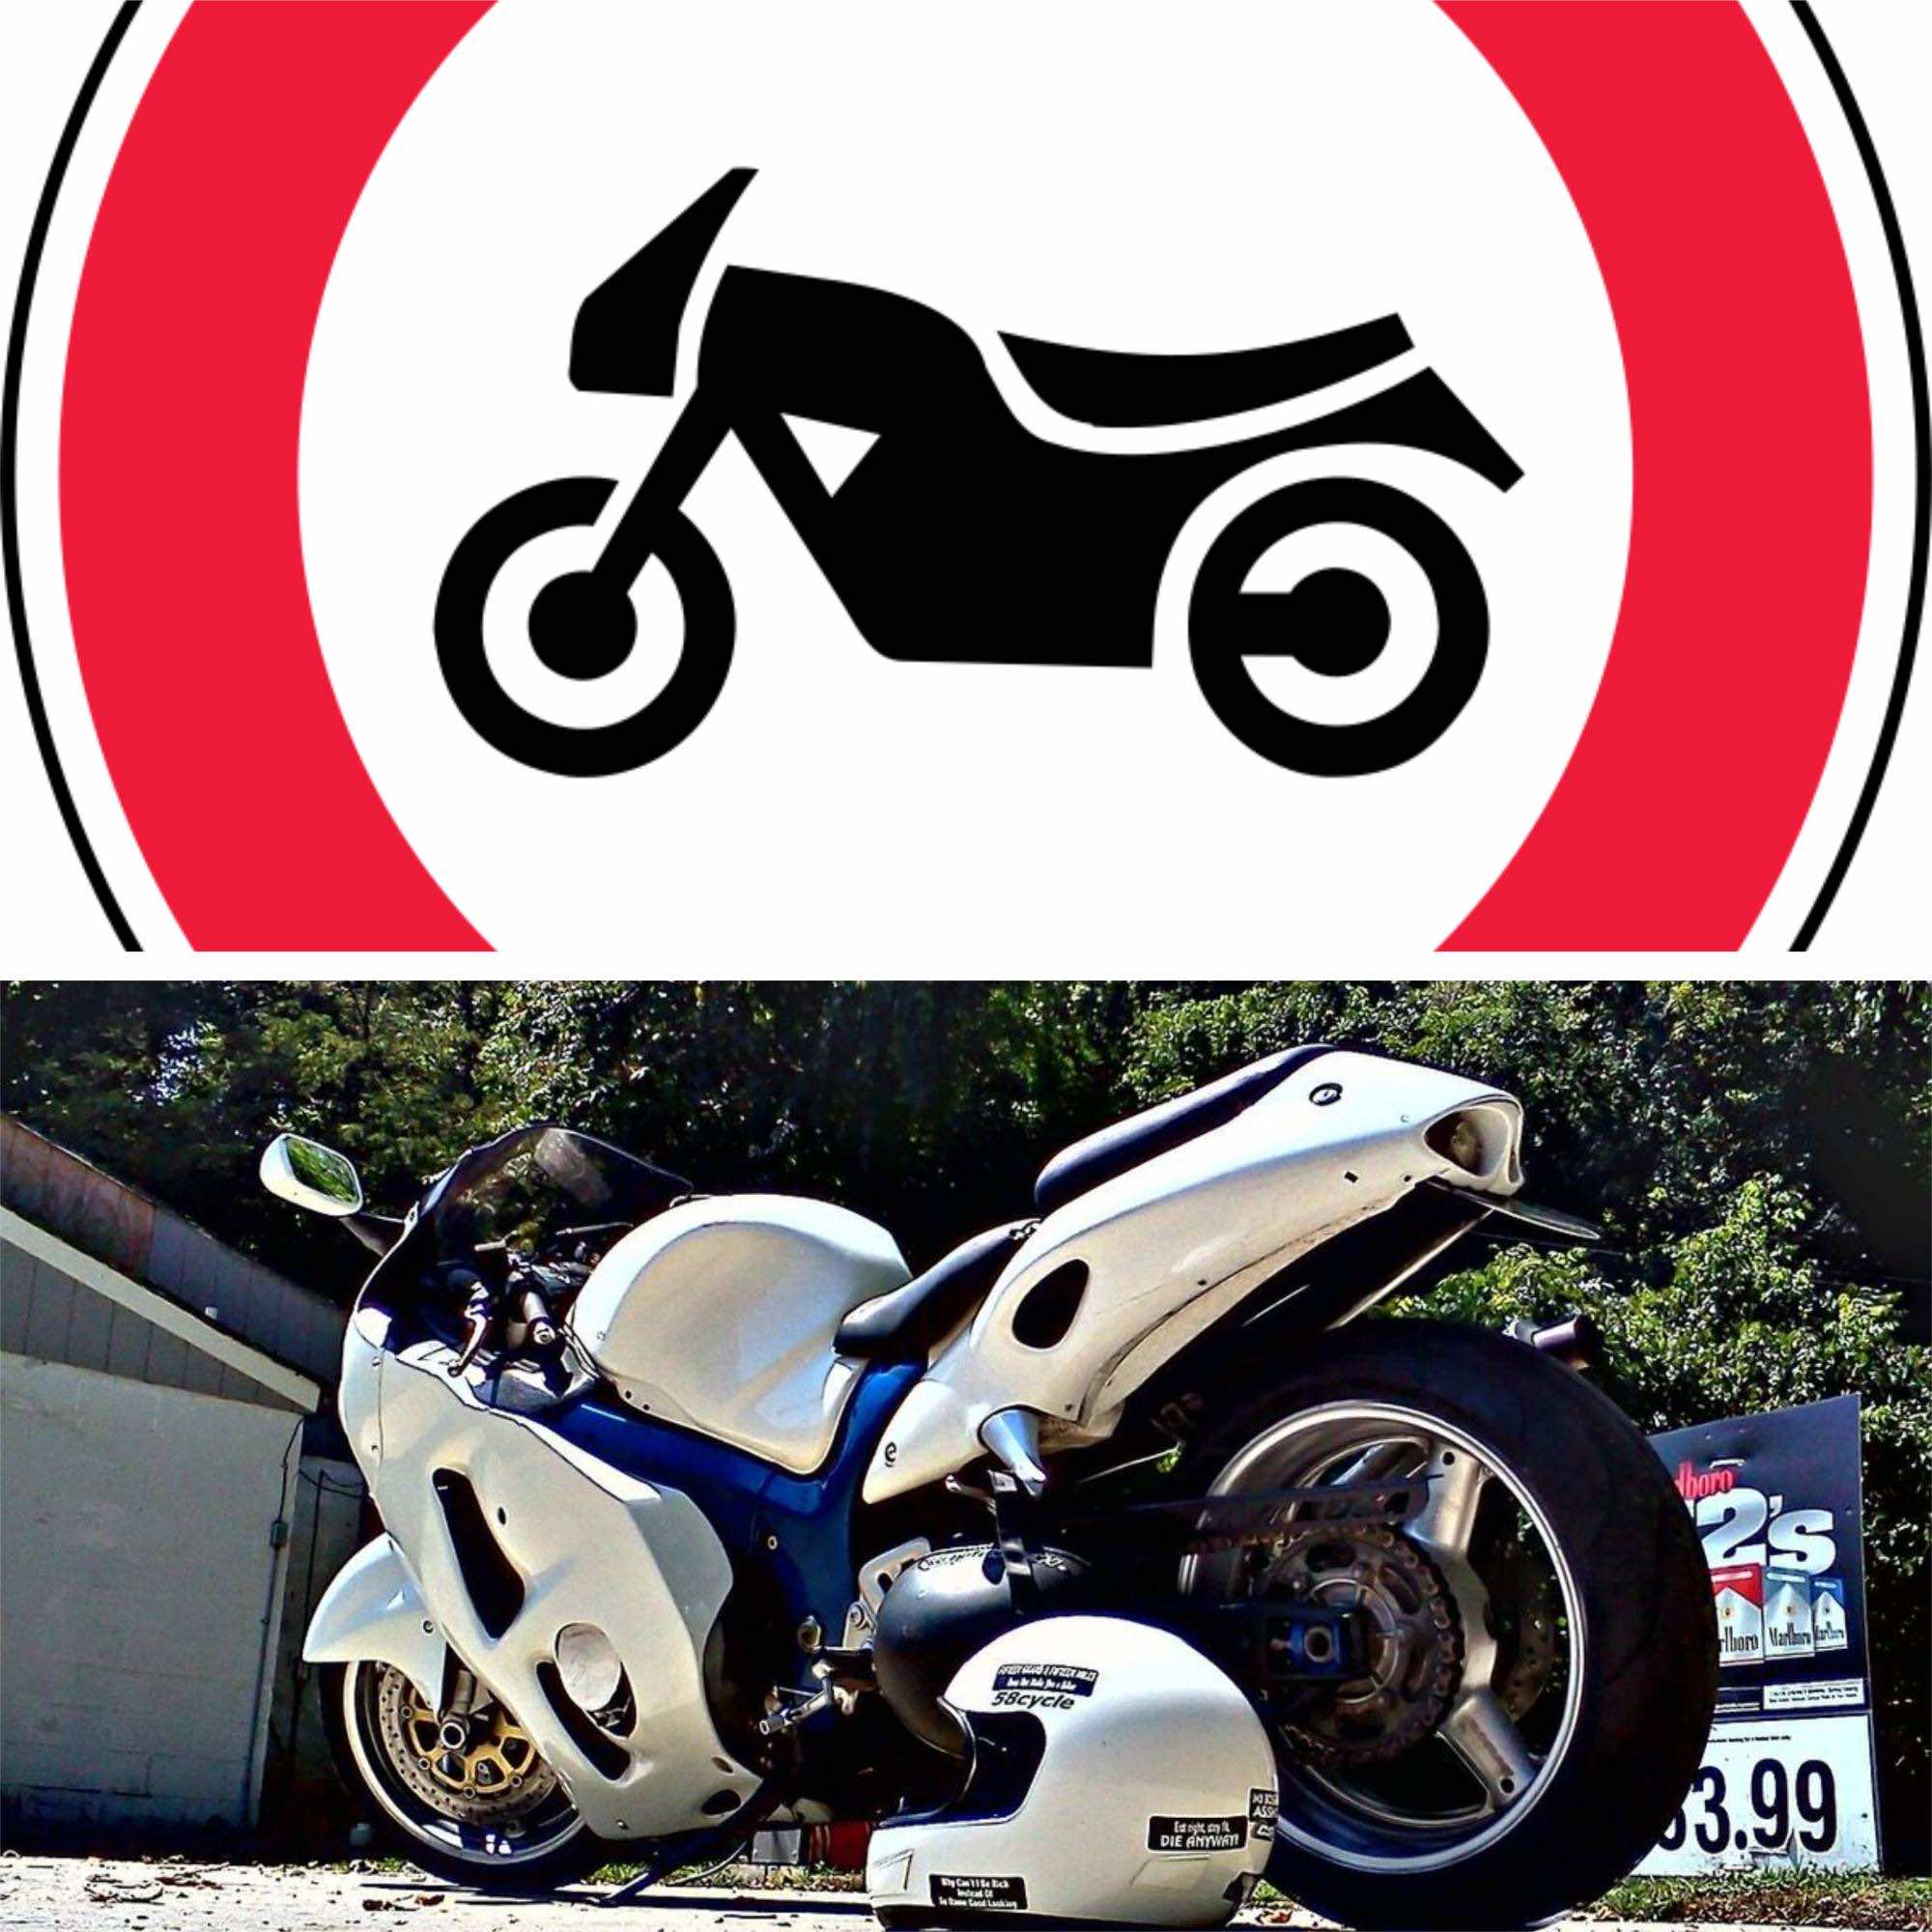 σήμανση απαγόρευσης μοτοσικλέτας και μοτοσικλέτα παρκαρισμένη στο δρόμο